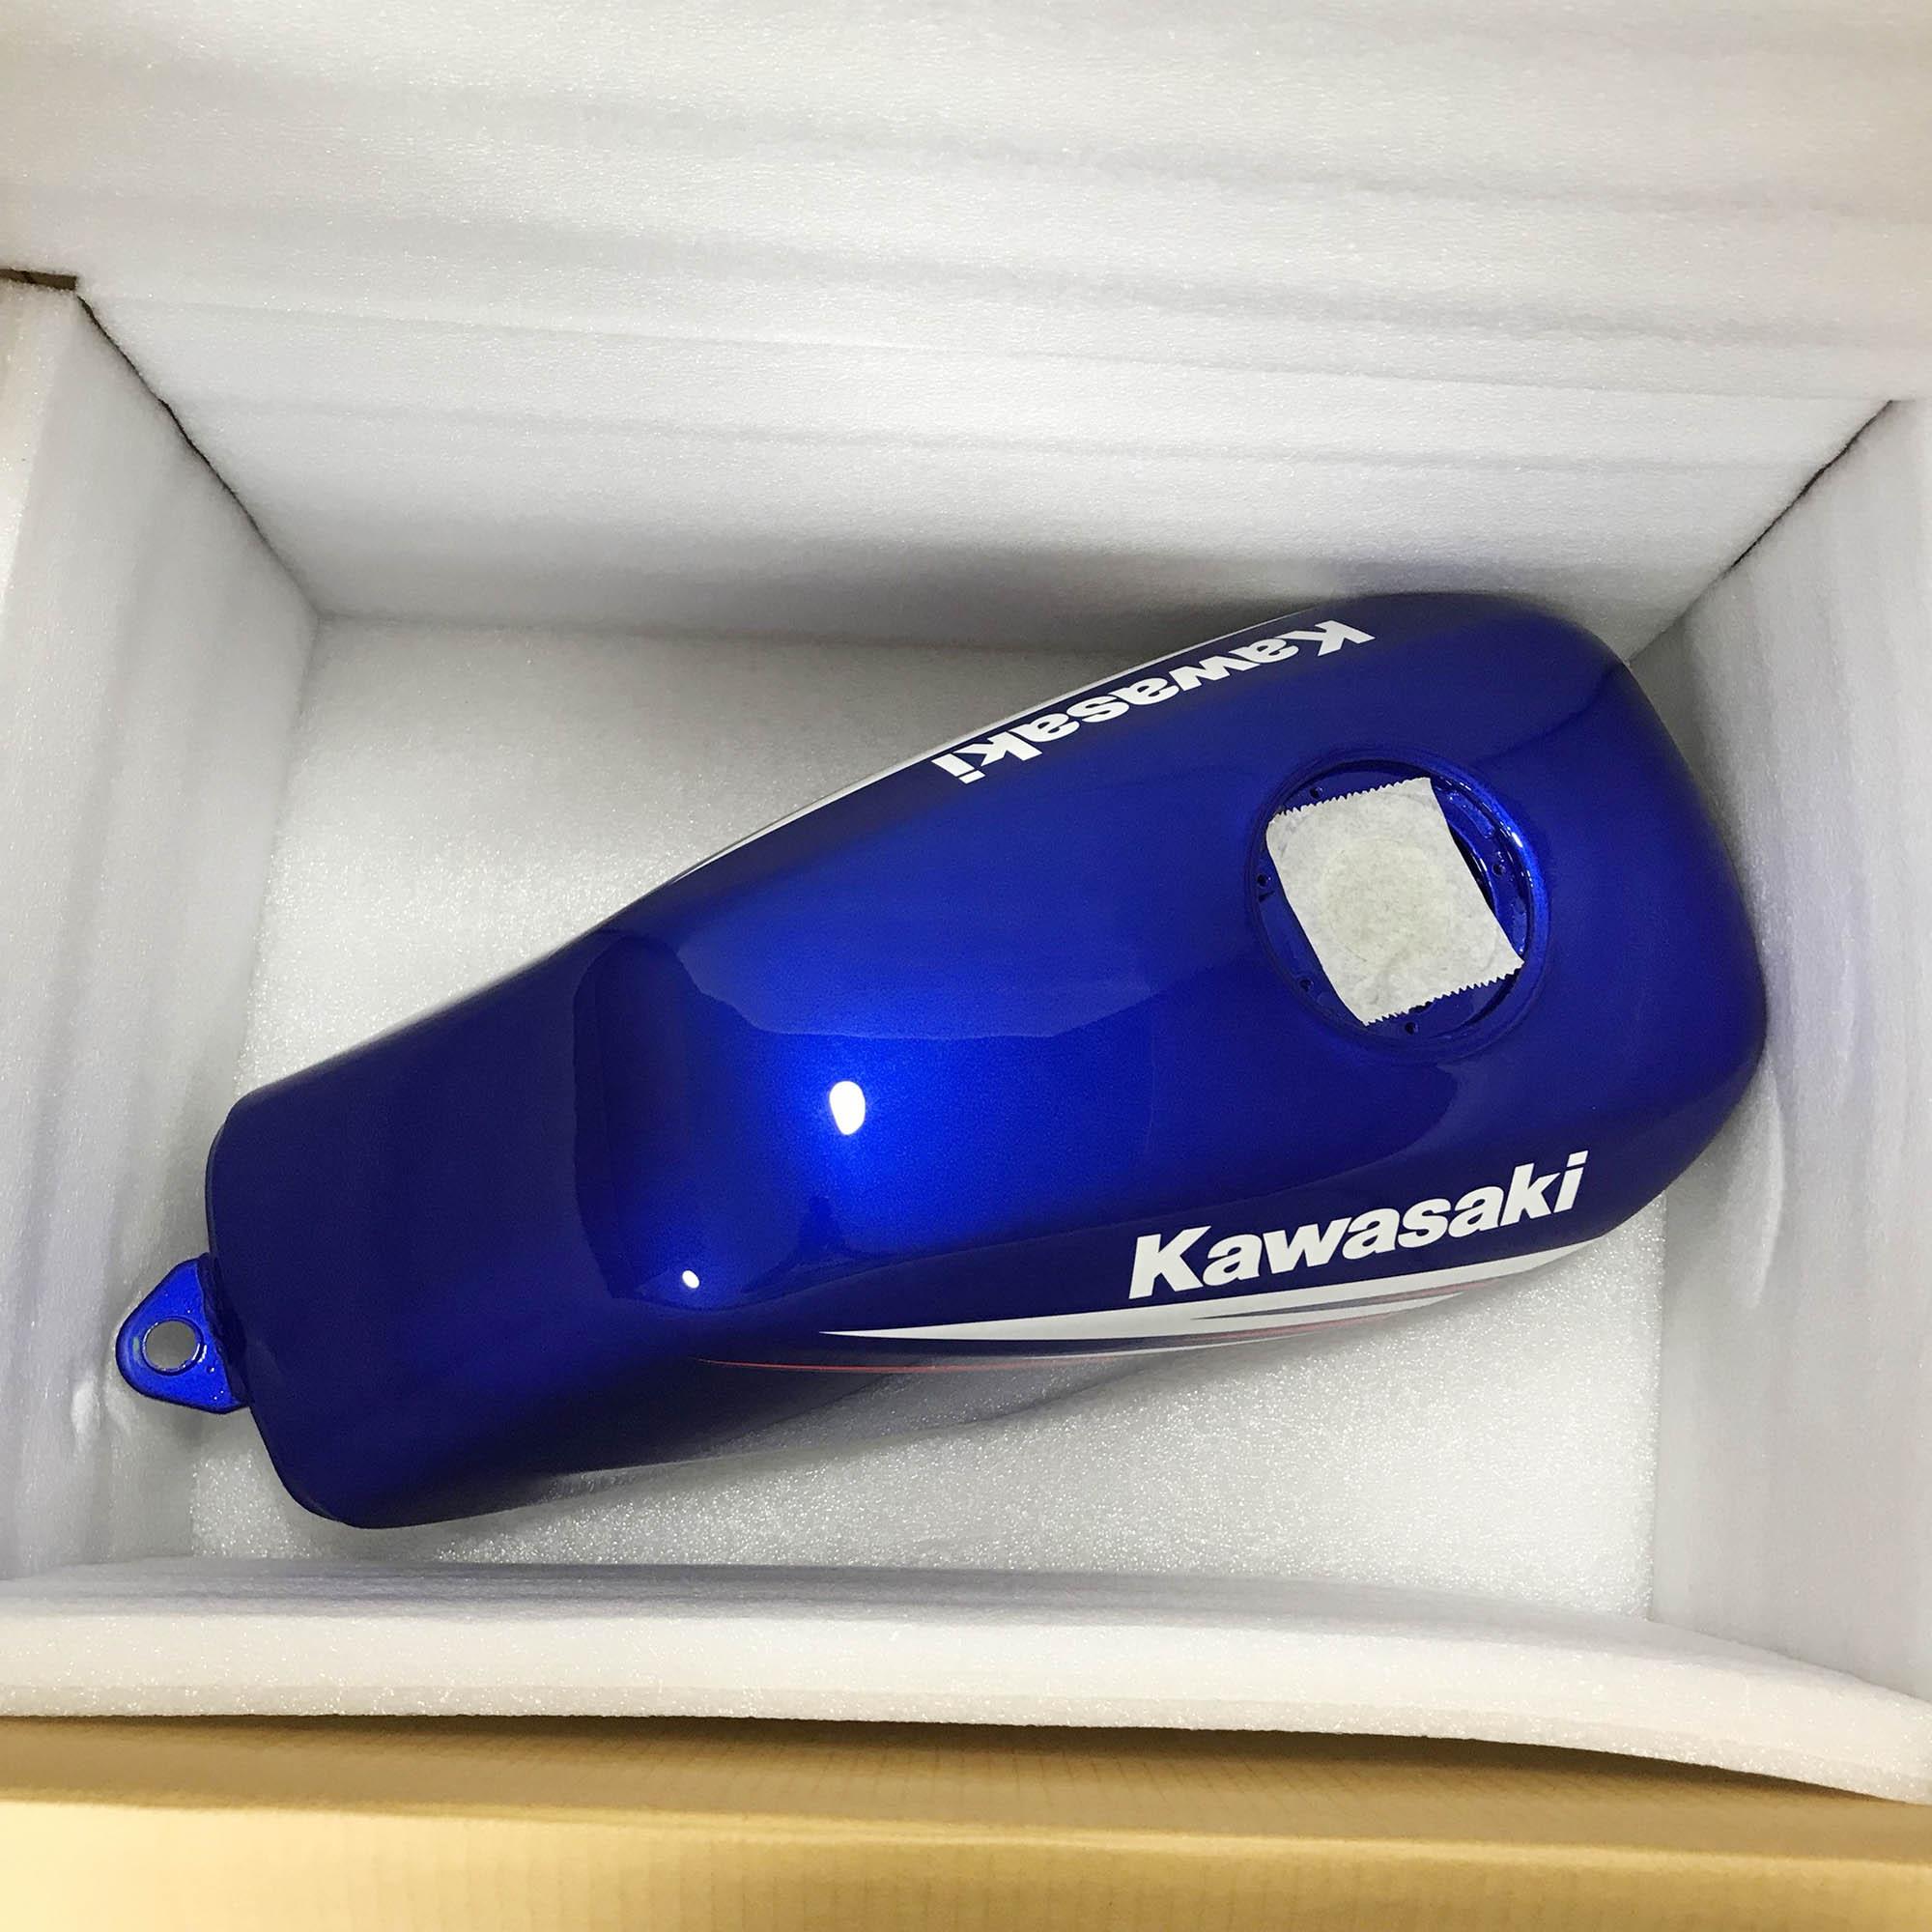 KAWASAKI แท้ศูนย์ ถังน้ำมันเชื้อเพลิง สีน้ำเงิน สำหรับ KR E10 (51090-5140-620)